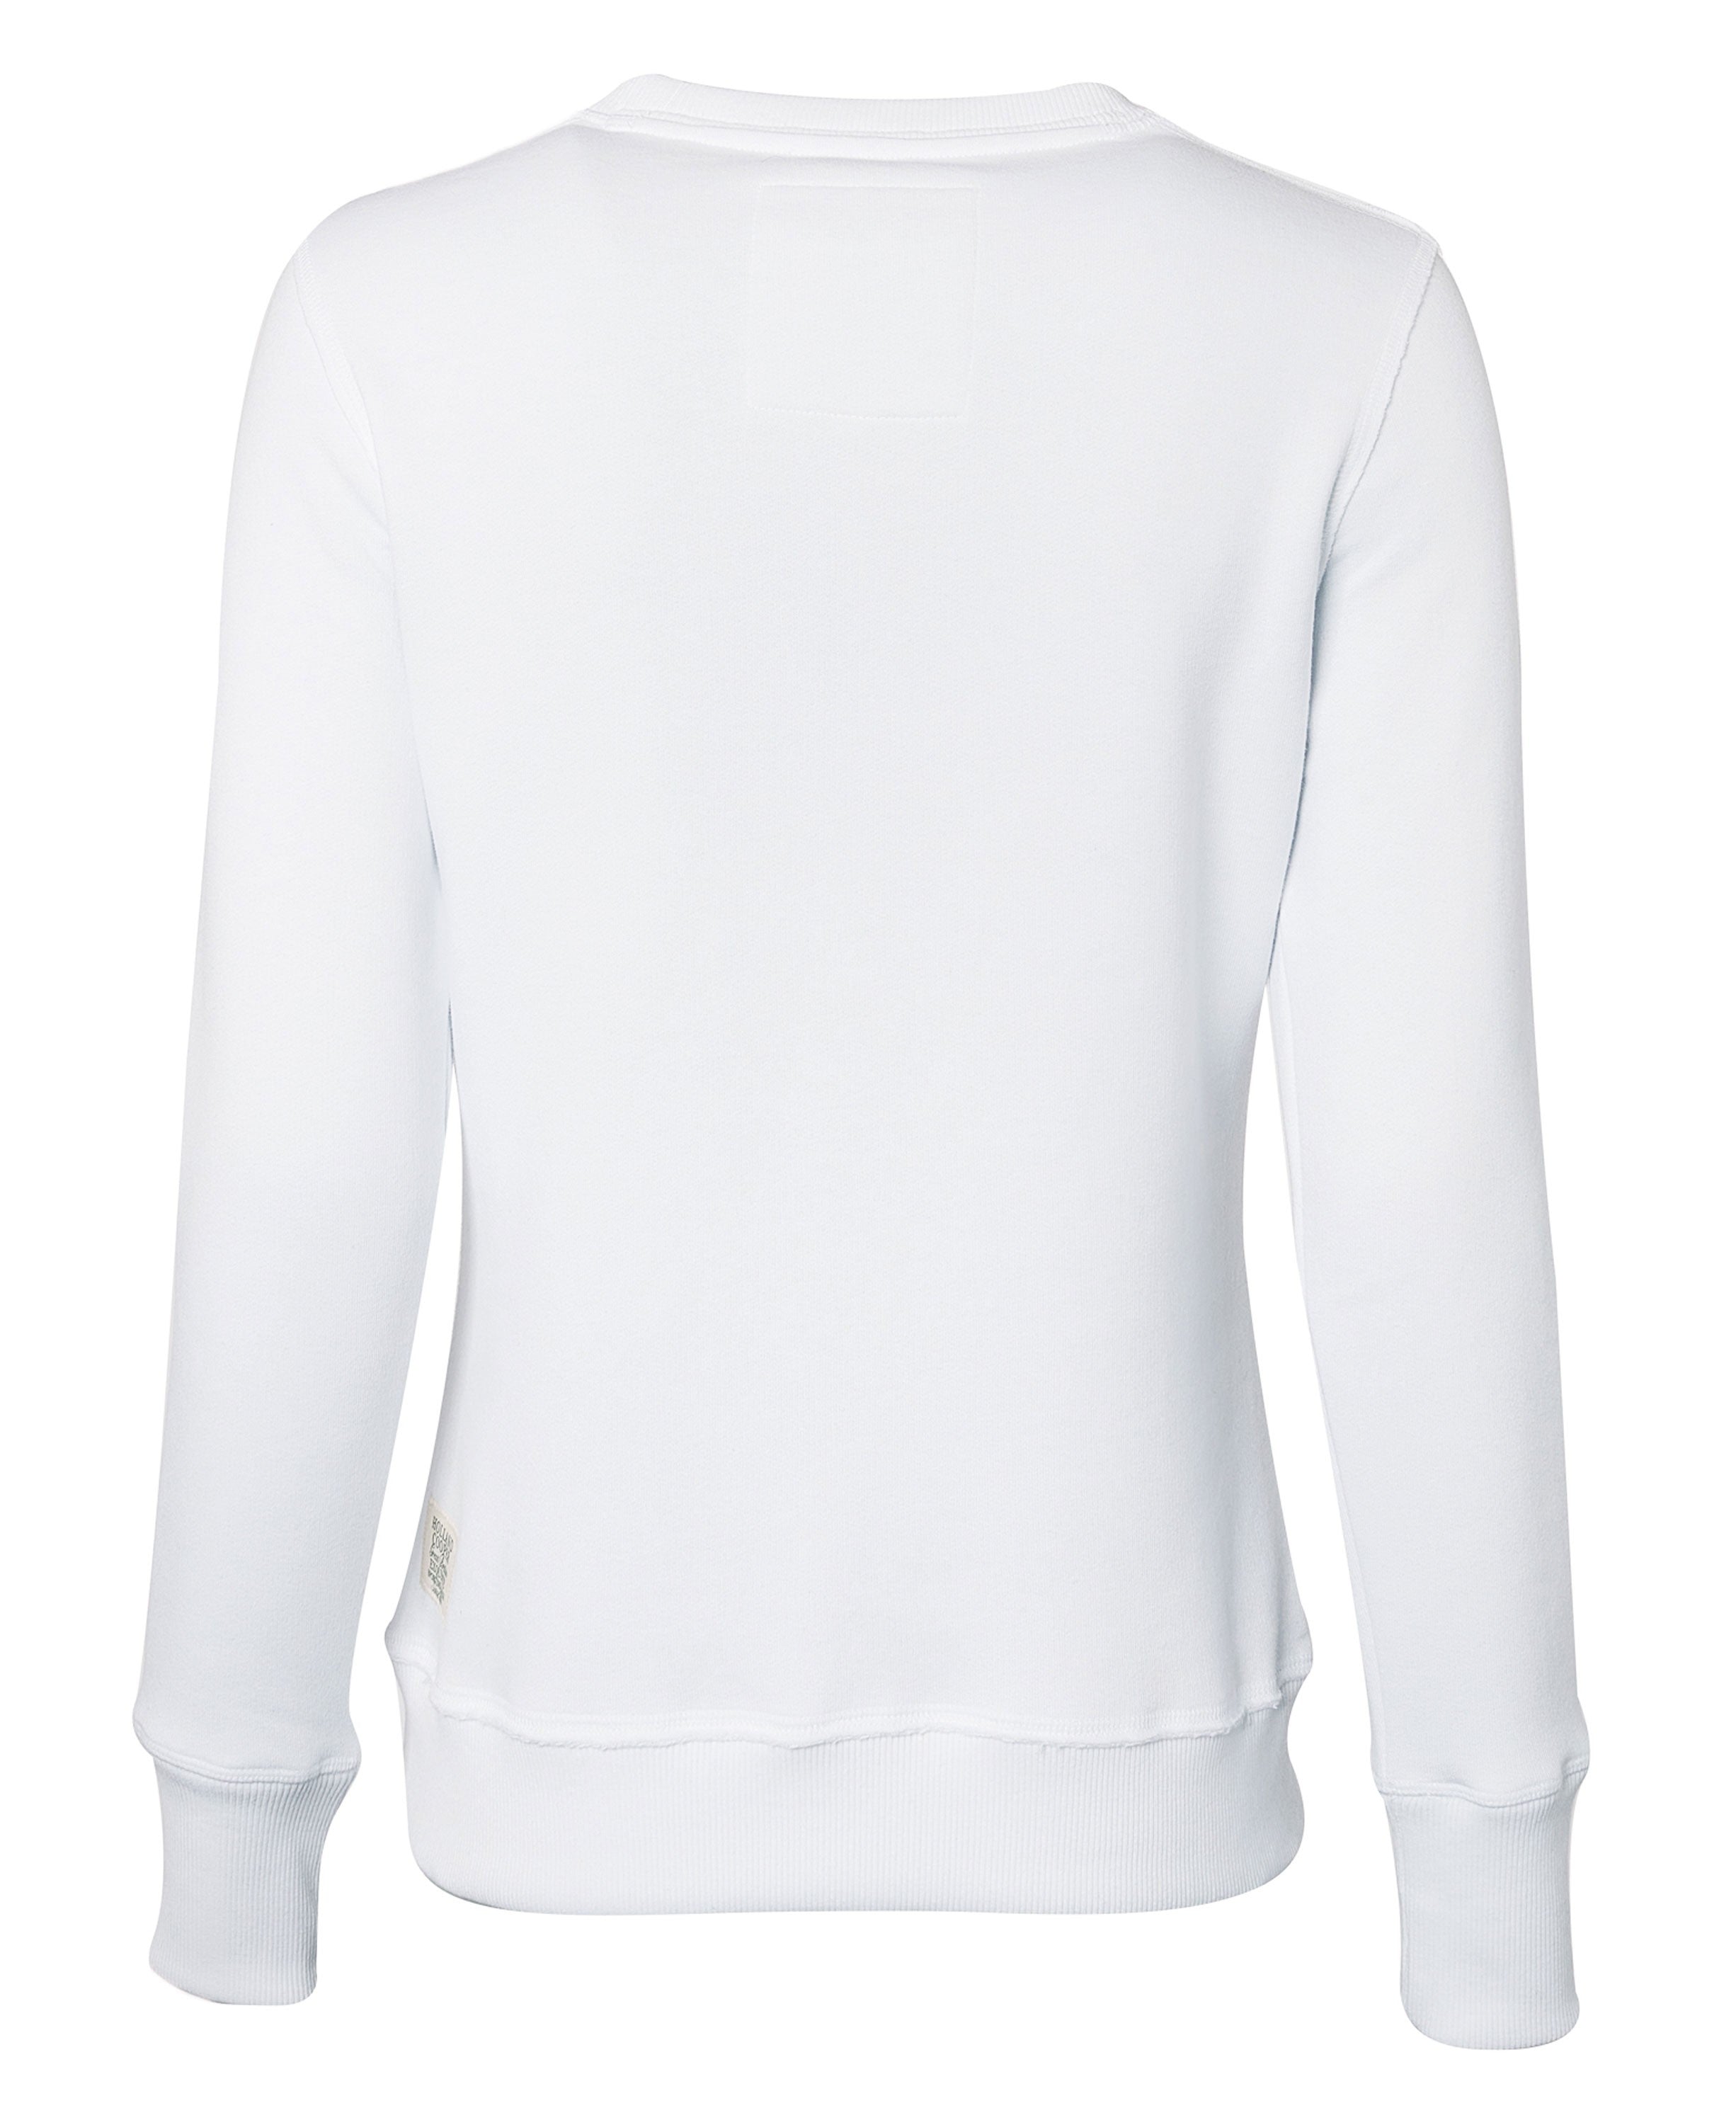 Varsity Crew Sweatshirt - White